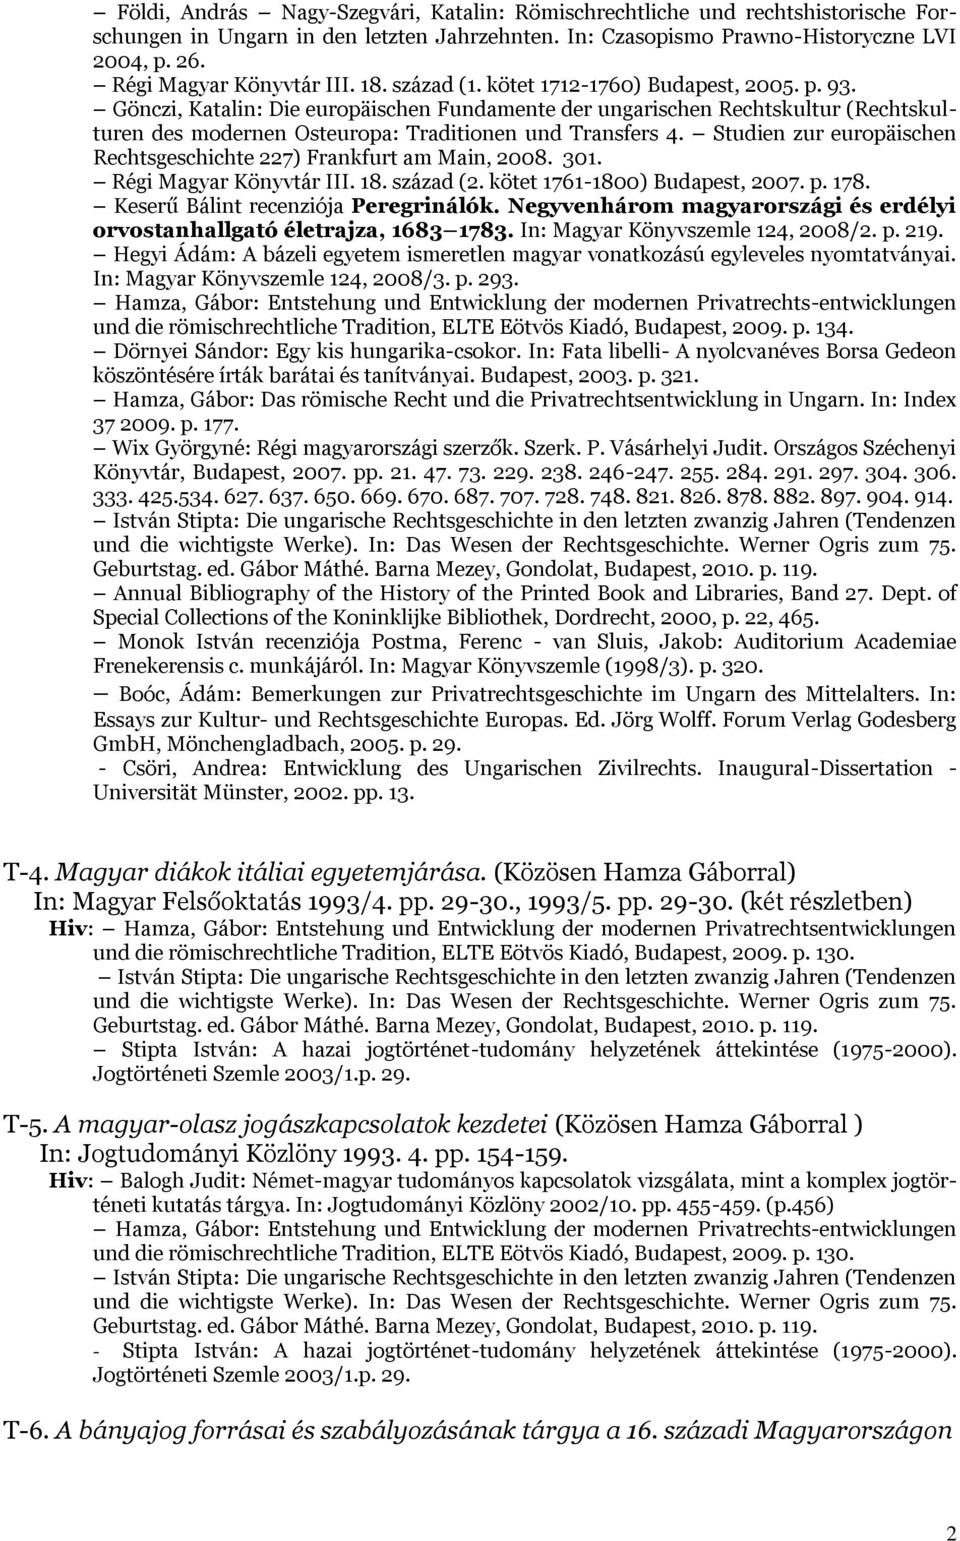 Gönczi, Katalin: Die europäischen Fundamente der ungarischen Rechtskultur (Rechtskulturen des modernen Osteuropa: Traditionen und Transfers 4.